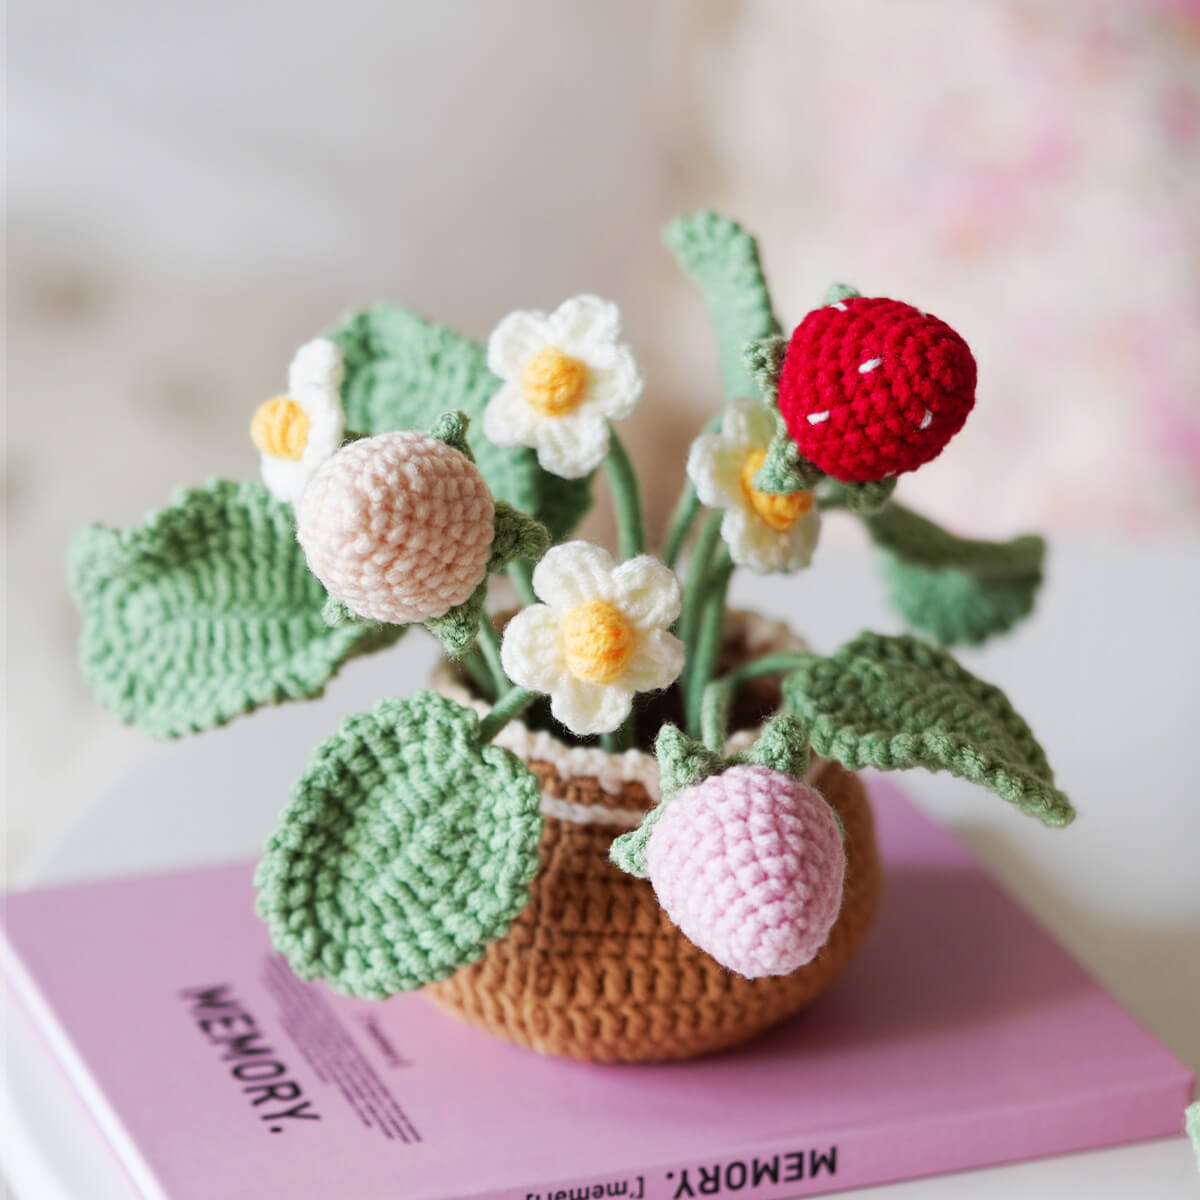 Cuteeeshop Crochet Kits Crochet Strawberry Flowers Bouquet For